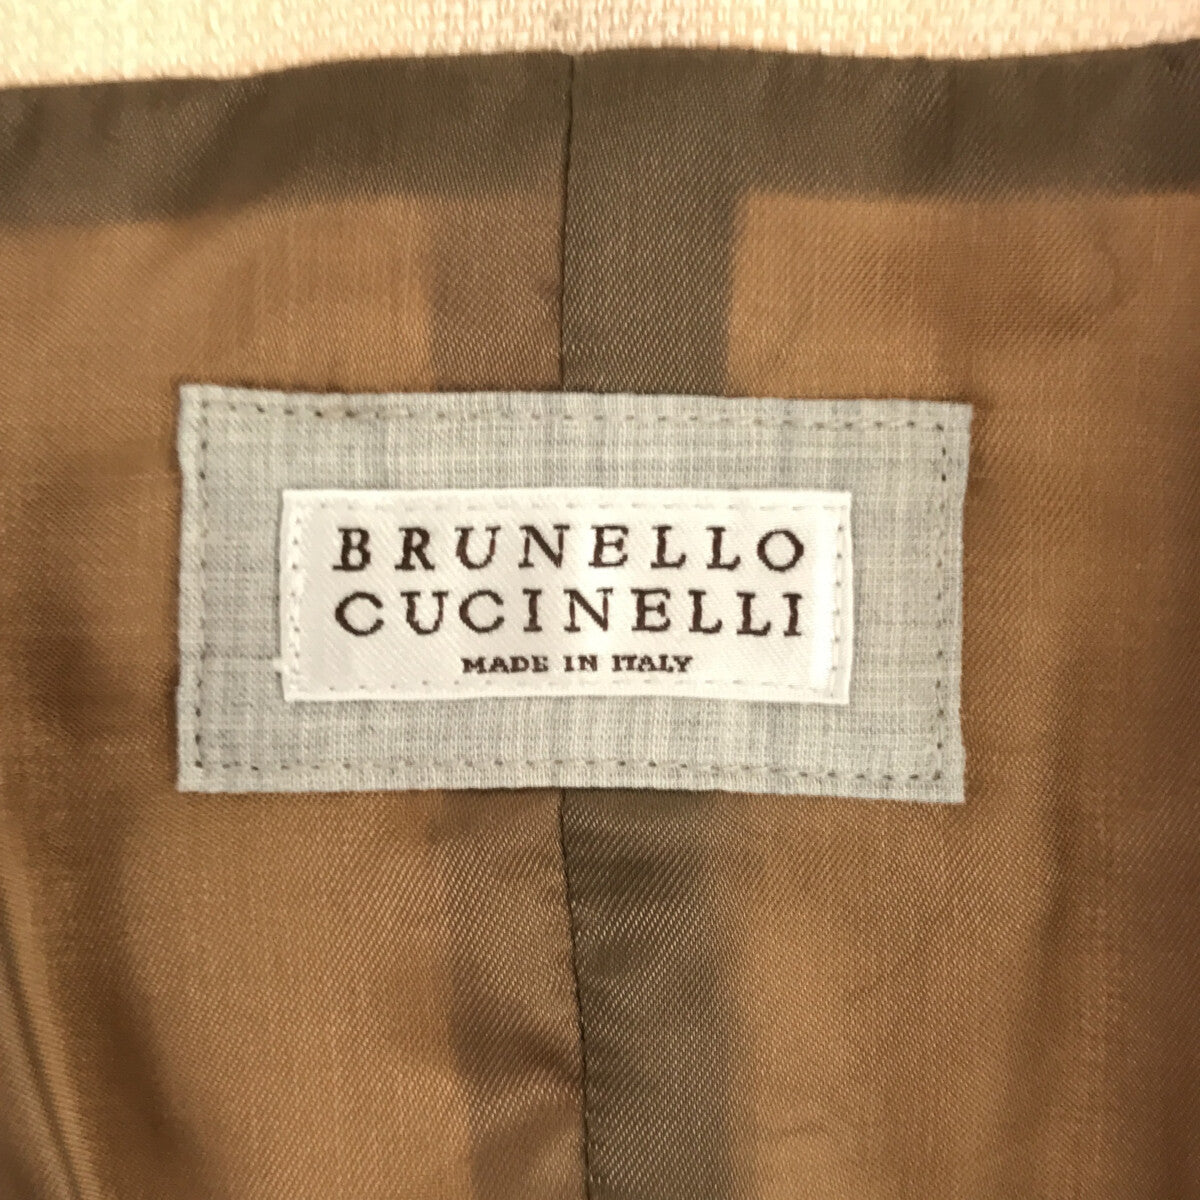 BRUNELLO CUCINELLI / ブルネロクチネリ | リネン ベスト ジレ / 総裏地 | 46 | メンズ